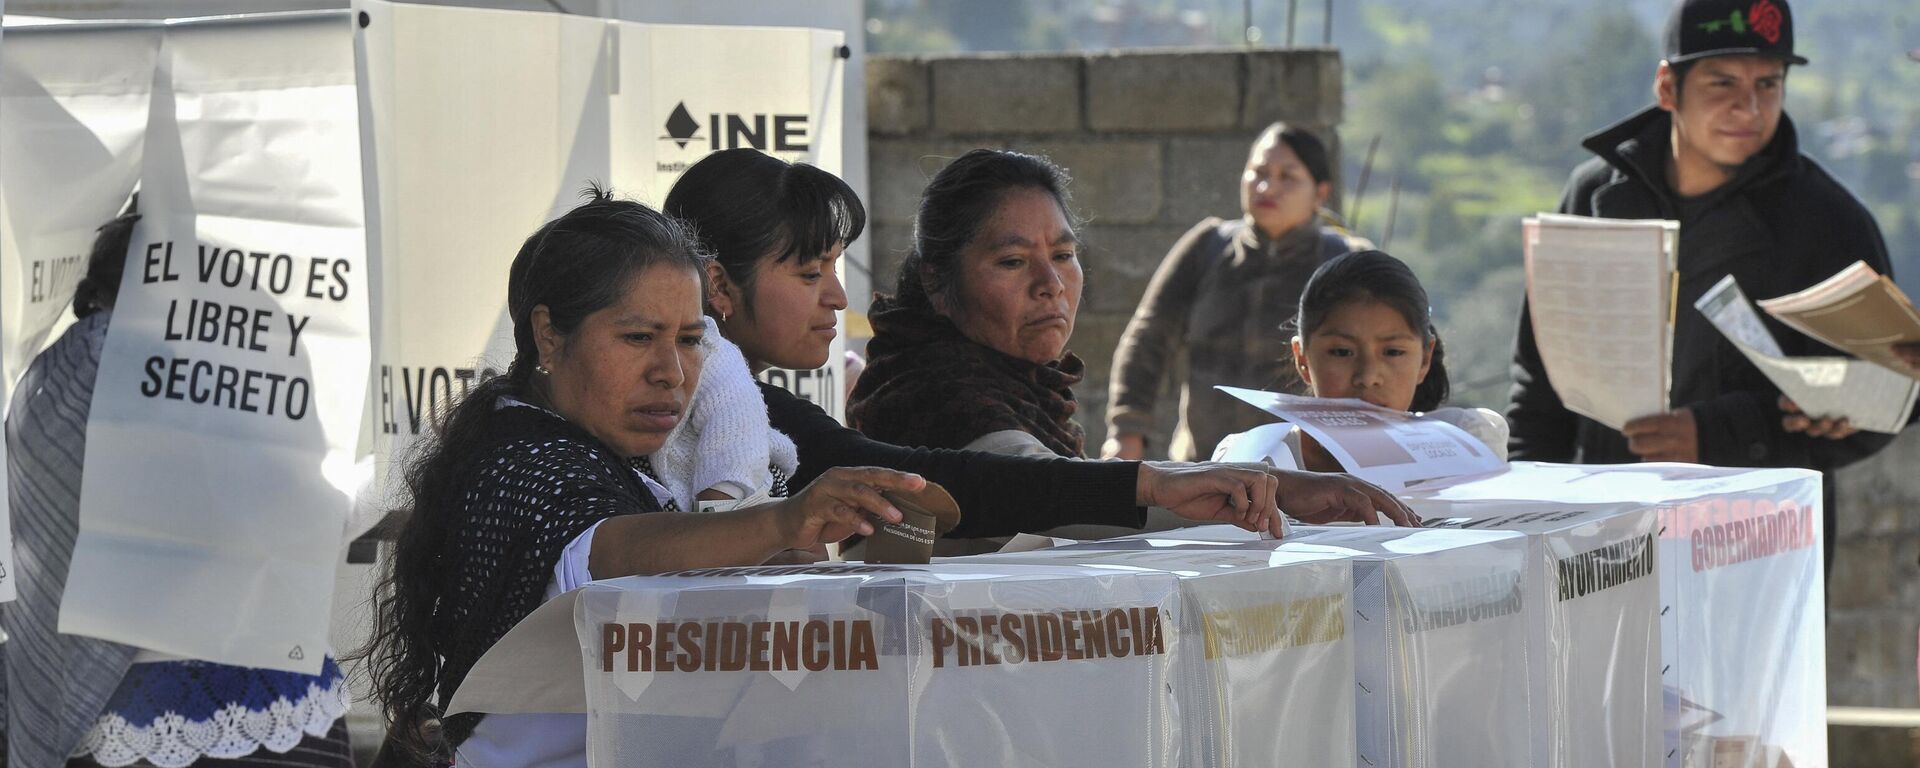 Las elecciones presidenciales en México se llevarán a cabo a mediados de 2024. - Sputnik Mundo, 1920, 02.03.2024